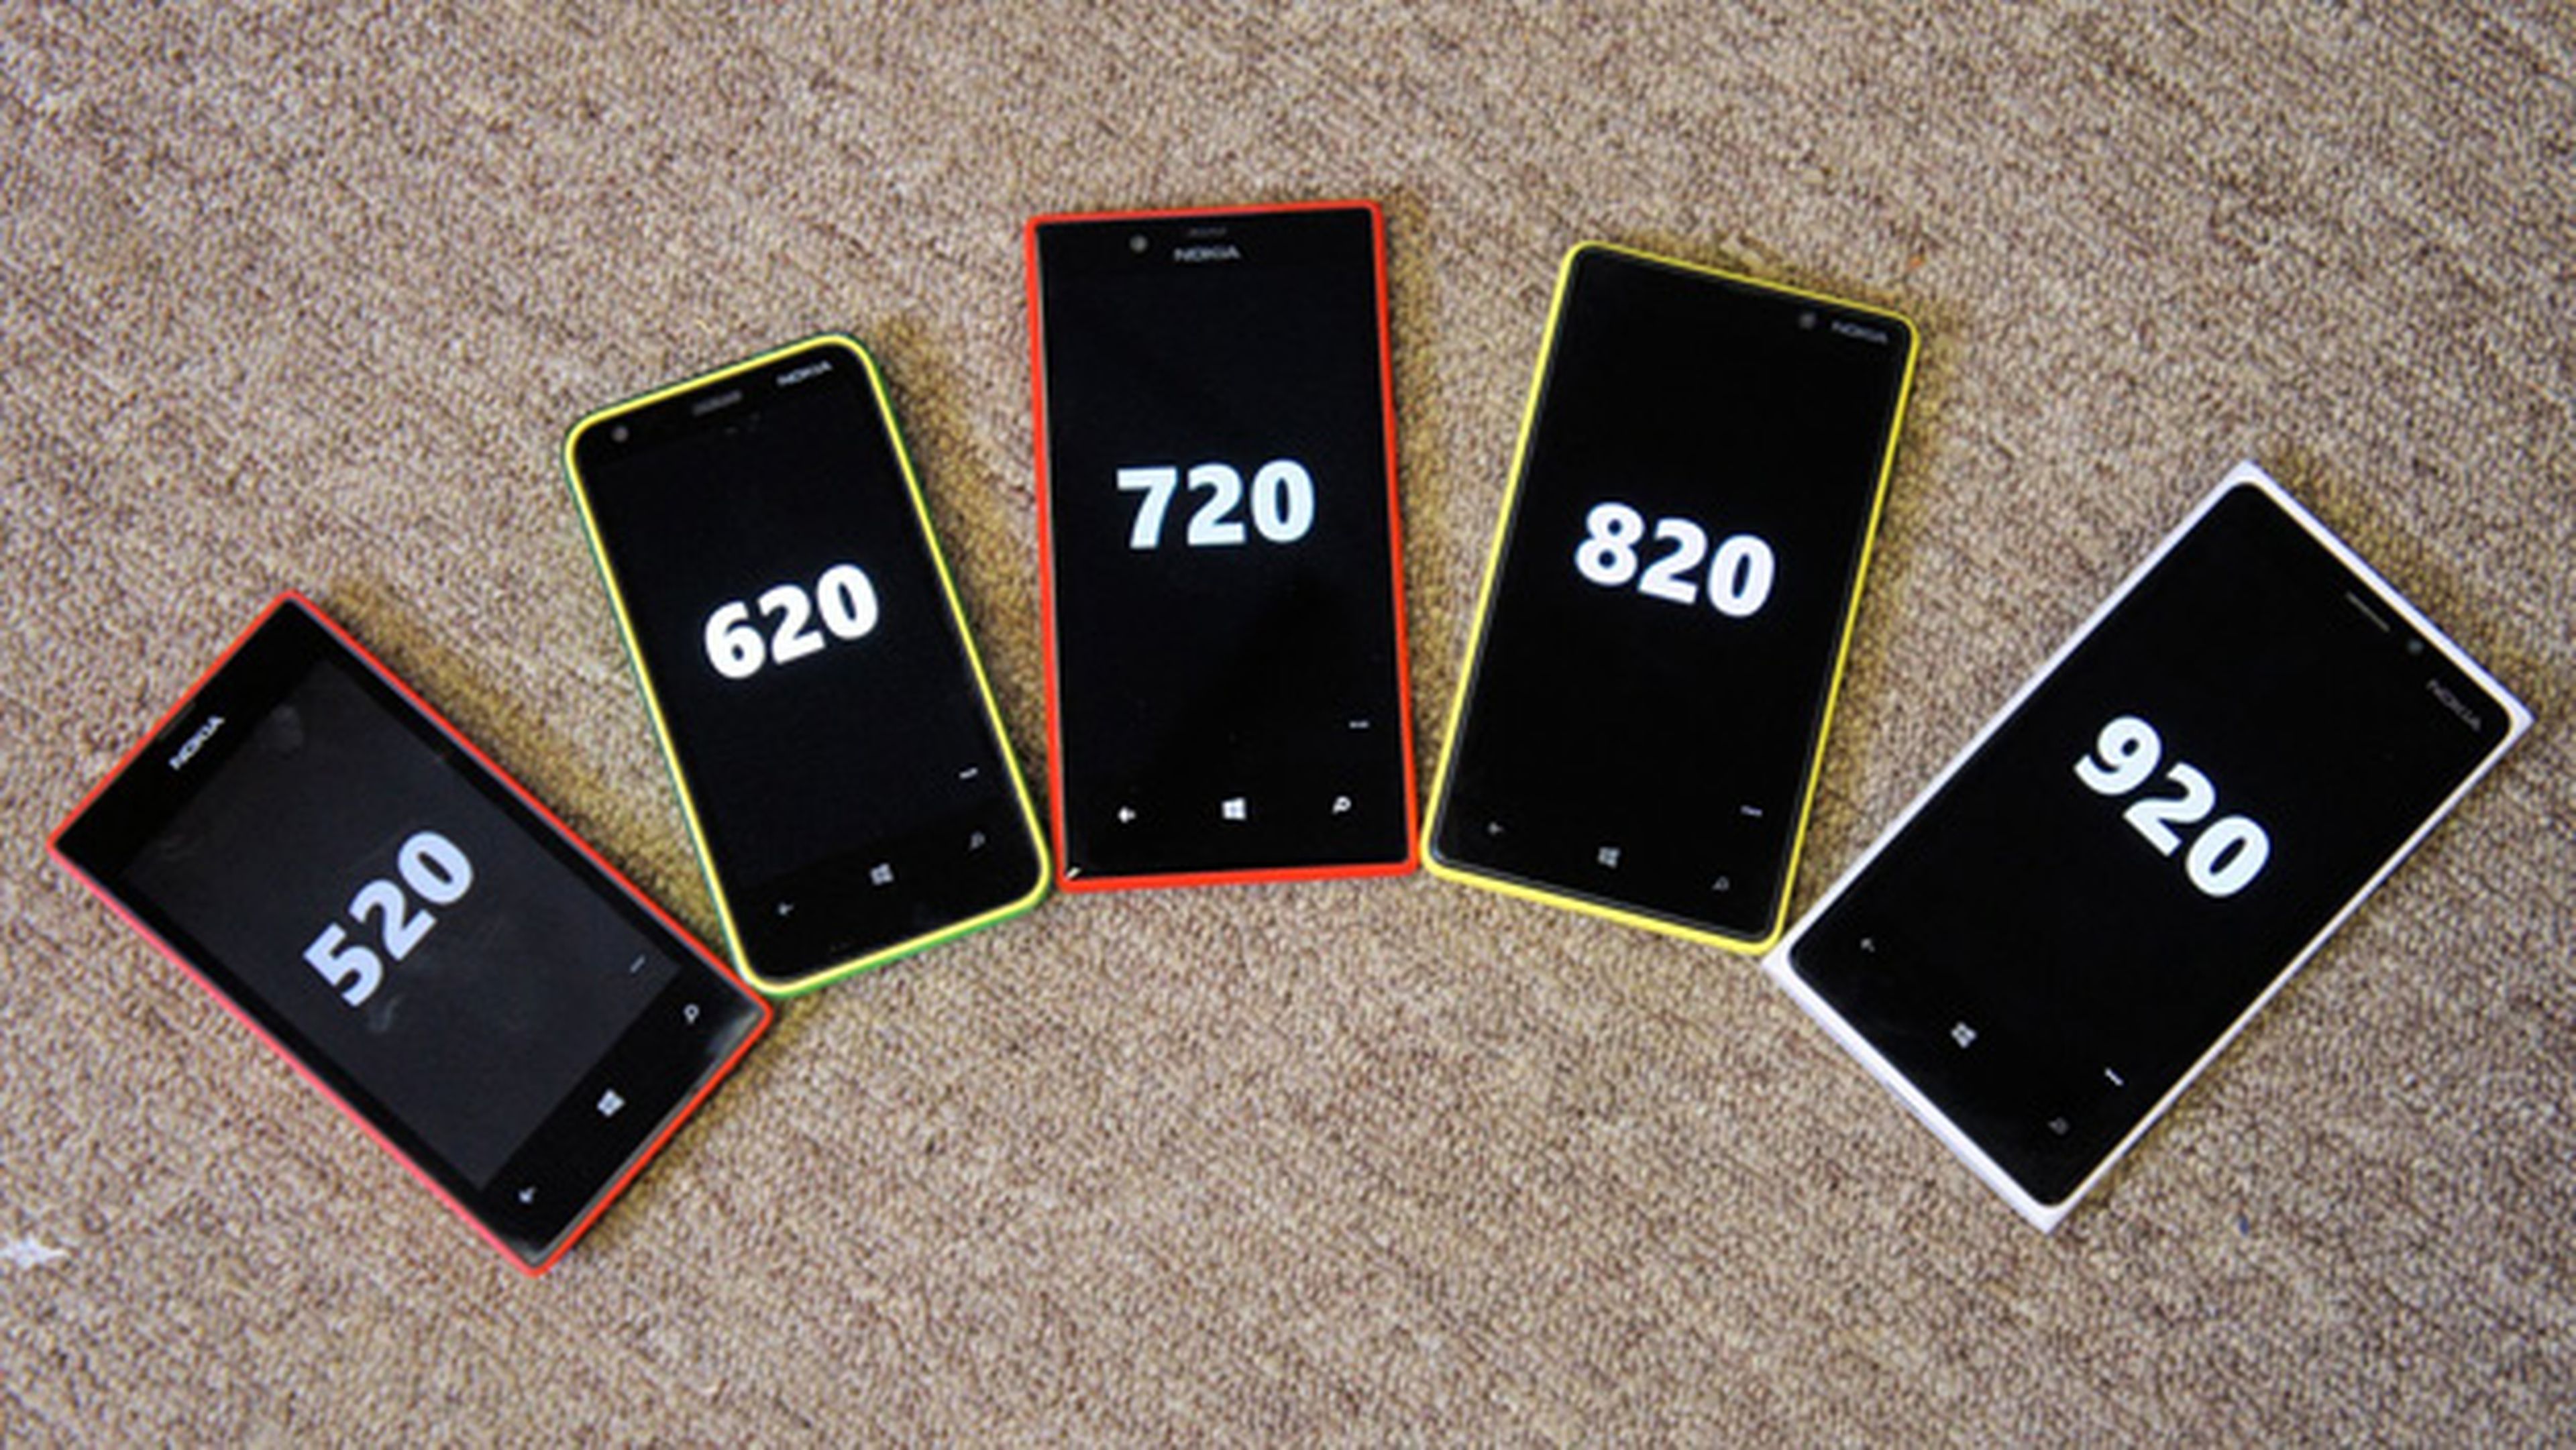 Diferentes modelos de teléfonos Lumia